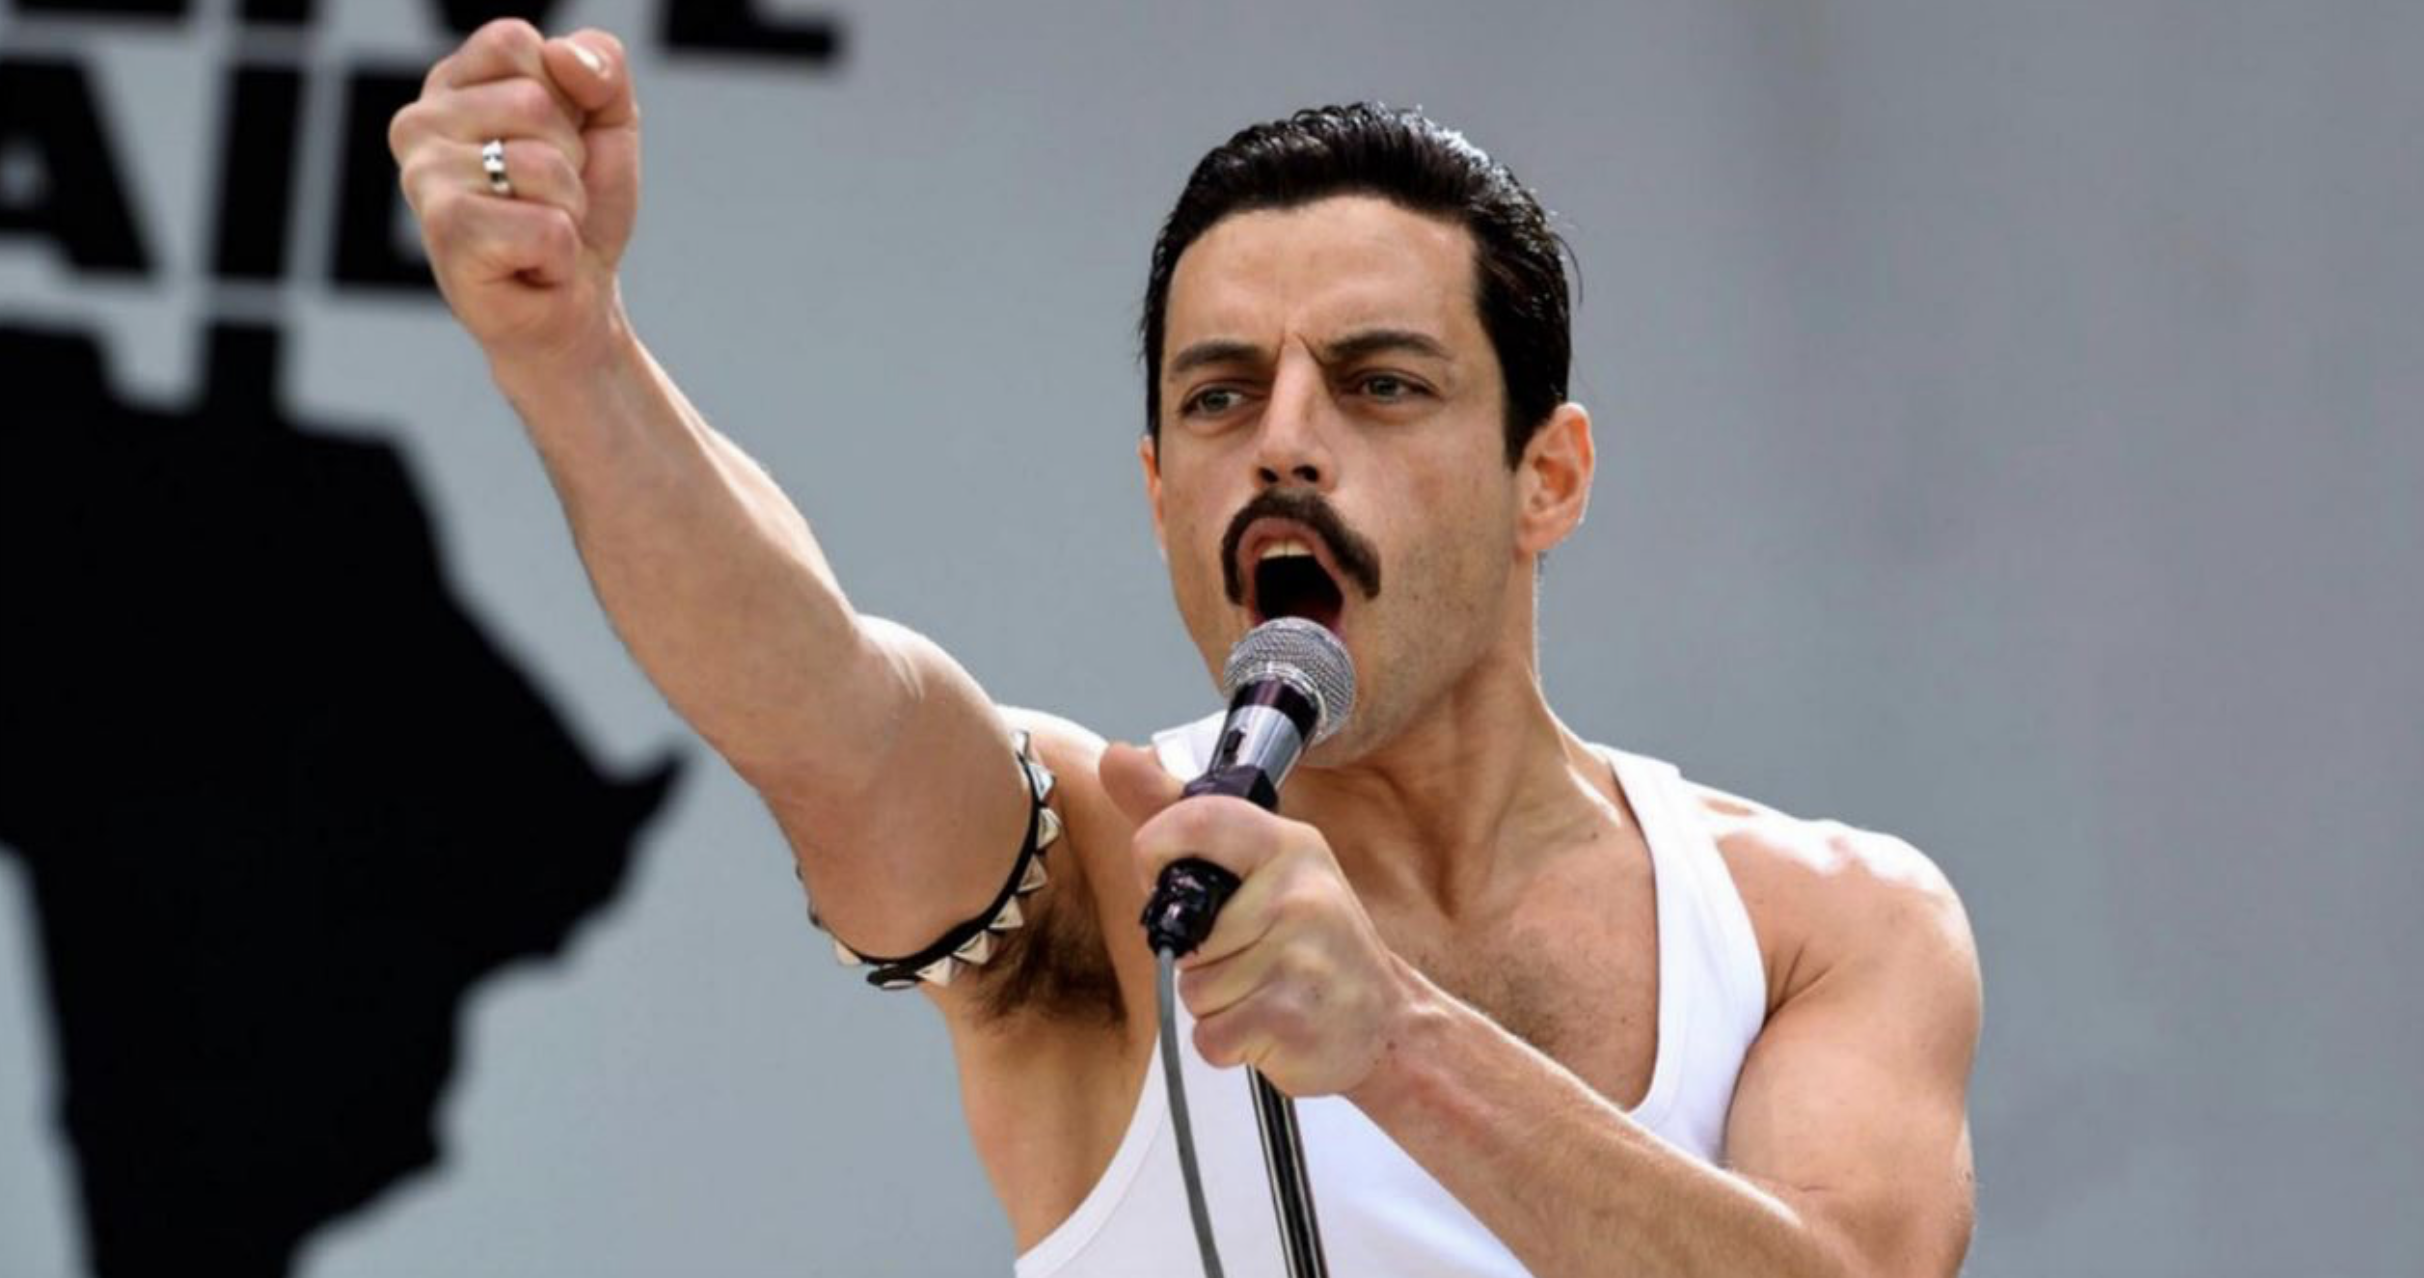 Une suite à Bohemian Rhapsody ? Le producteur répond